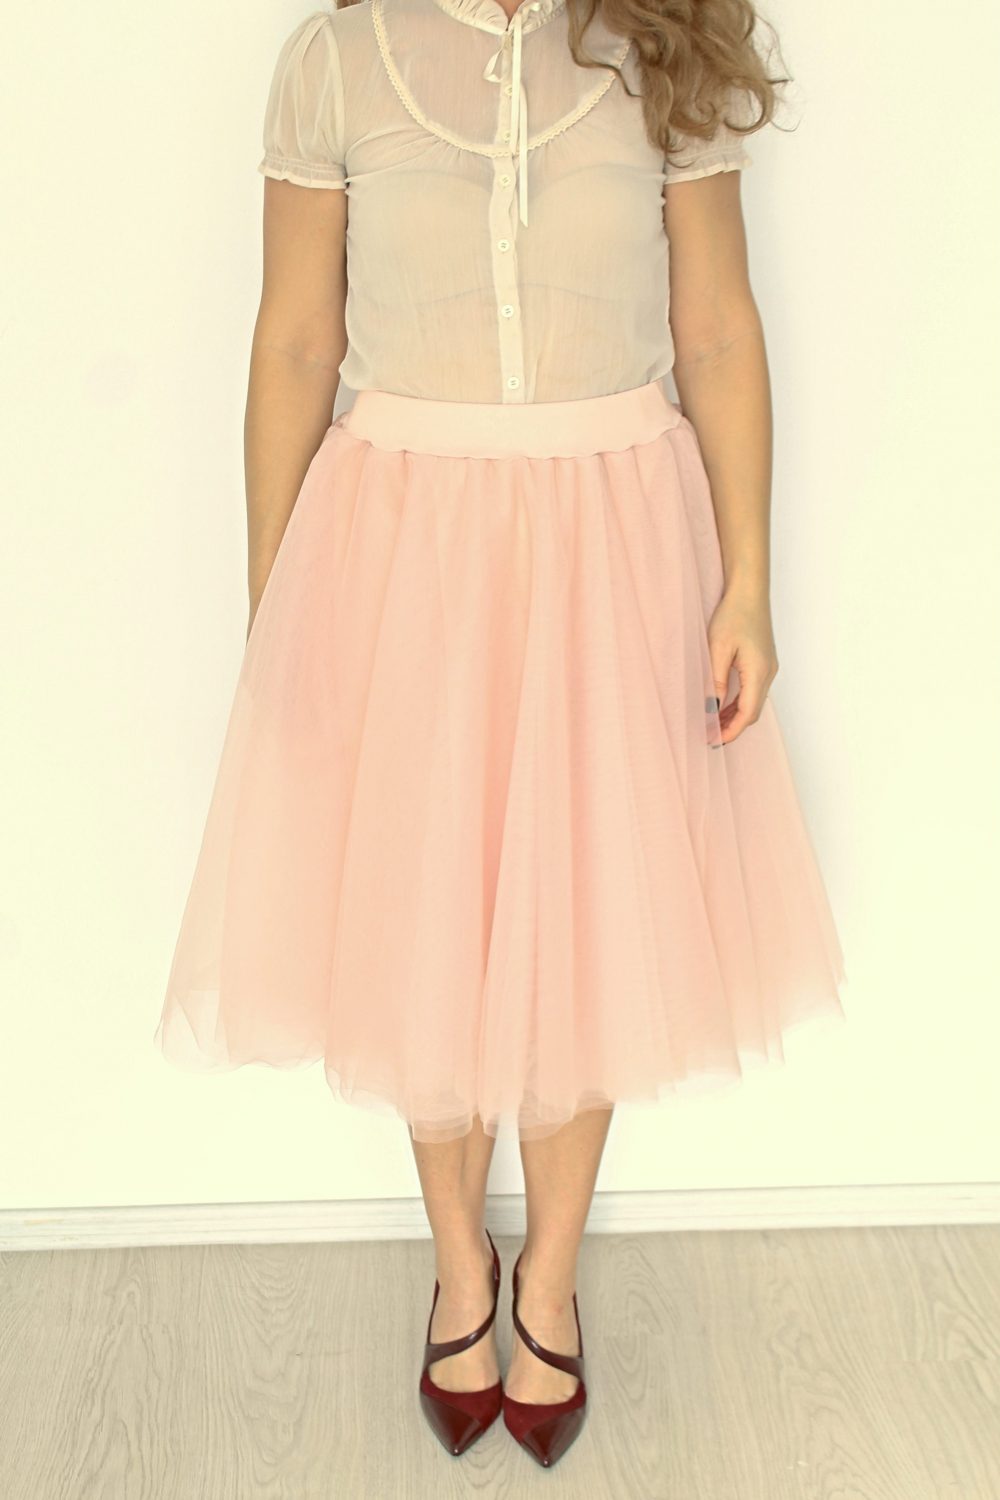 Diy Tulle Skirt For Ladies Layered Tulle Skirt Tutorial 3683